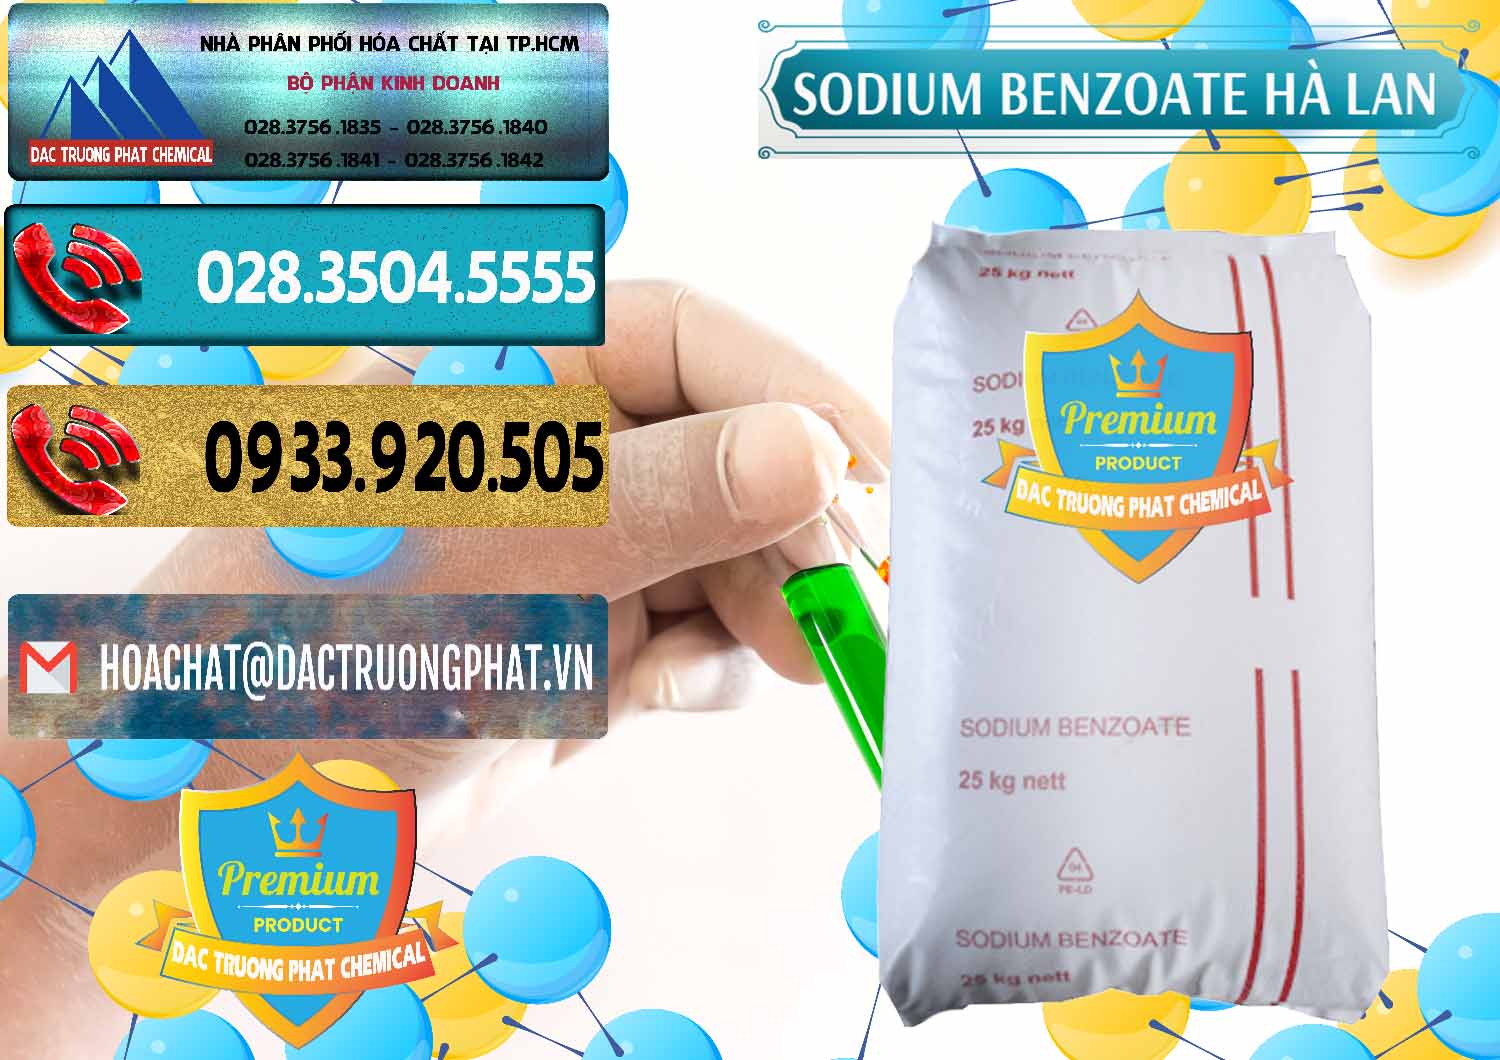 Nhà cung cấp - bán Sodium Benzoate - Mốc Bột Chữ Cam Hà Lan Netherlands - 0360 - Cty kinh doanh - phân phối hóa chất tại TP.HCM - hoachatdetnhuom.com